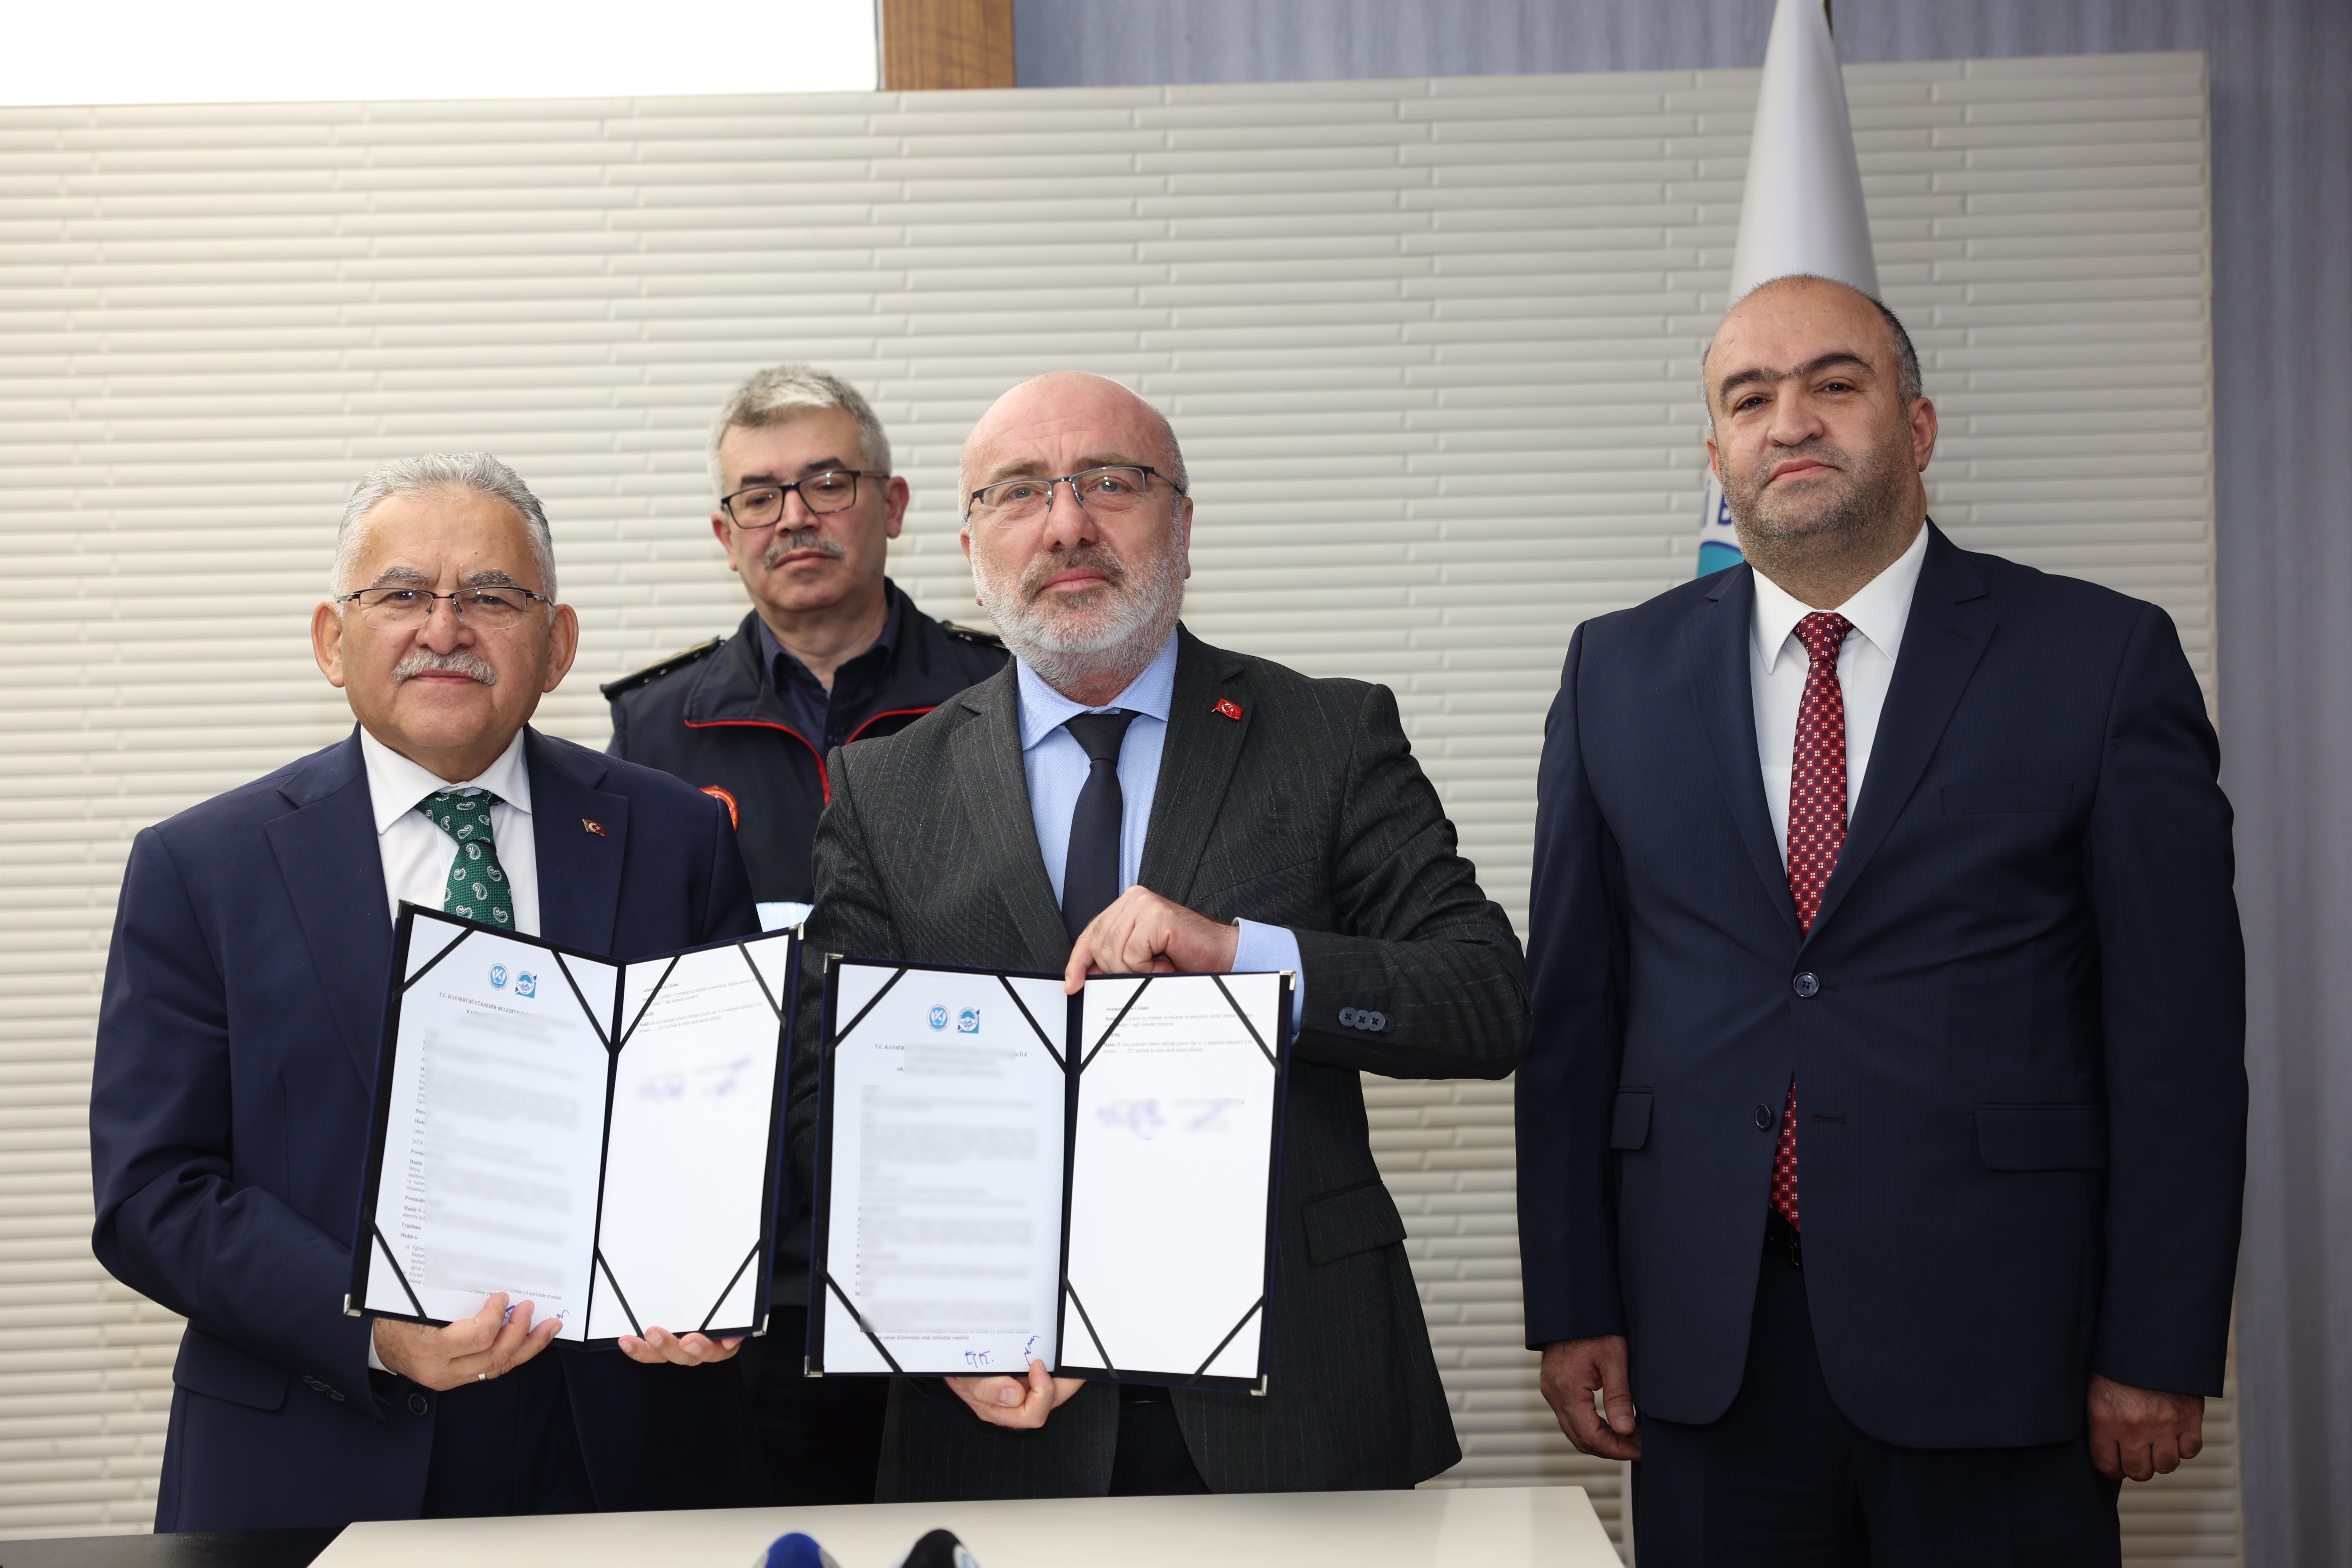 Kayseri Büyükşehir İtfaiyesi ile Kayseri Üniversitesi arasında iş birliği protokolü